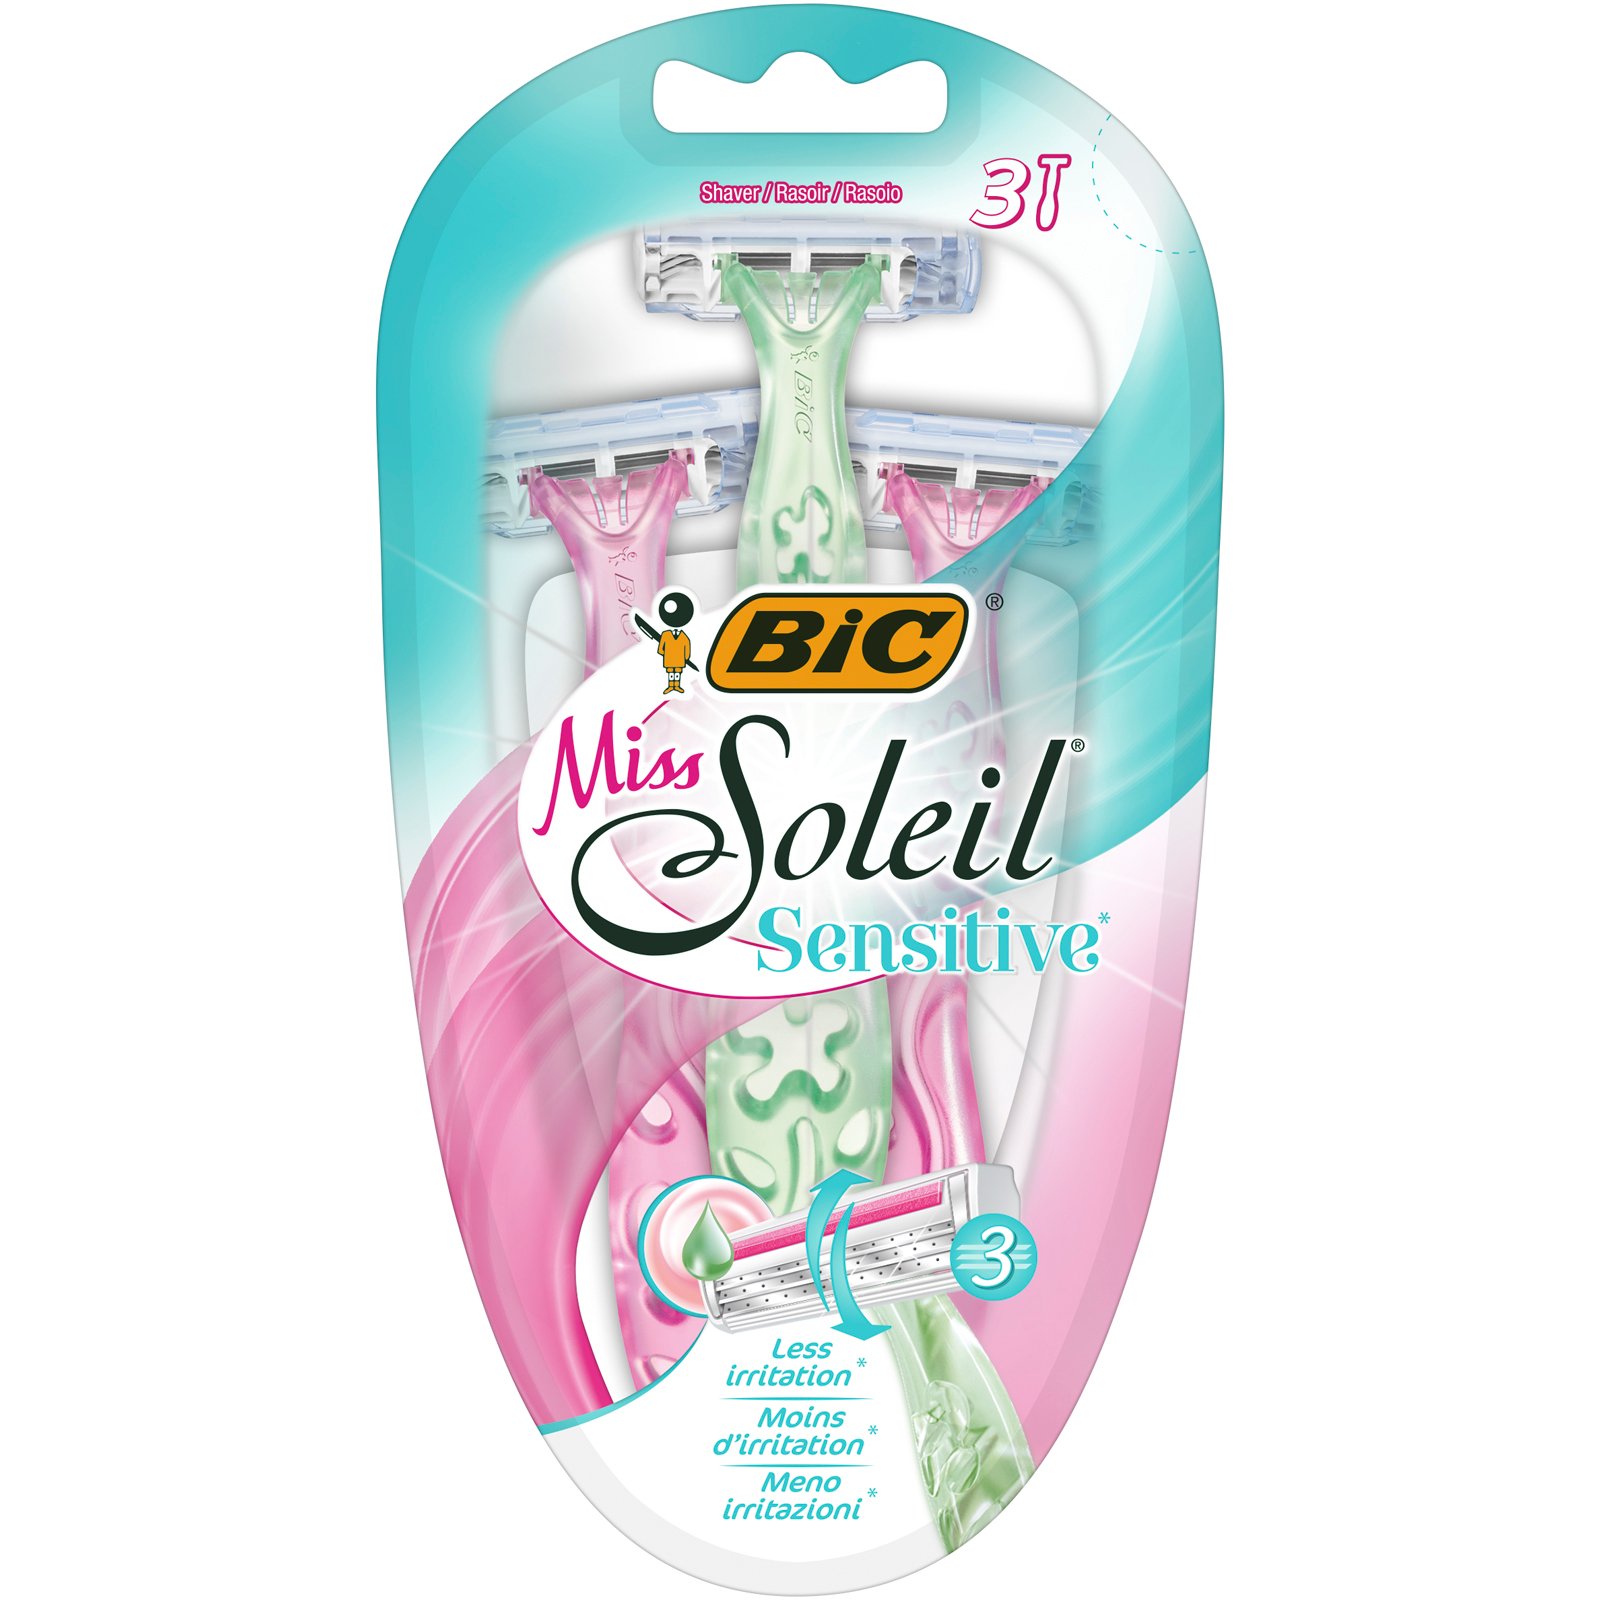 Бритва женская BIC Miss Soleil Sensitive, без сменных картриджей, 3 шт. - фото 1